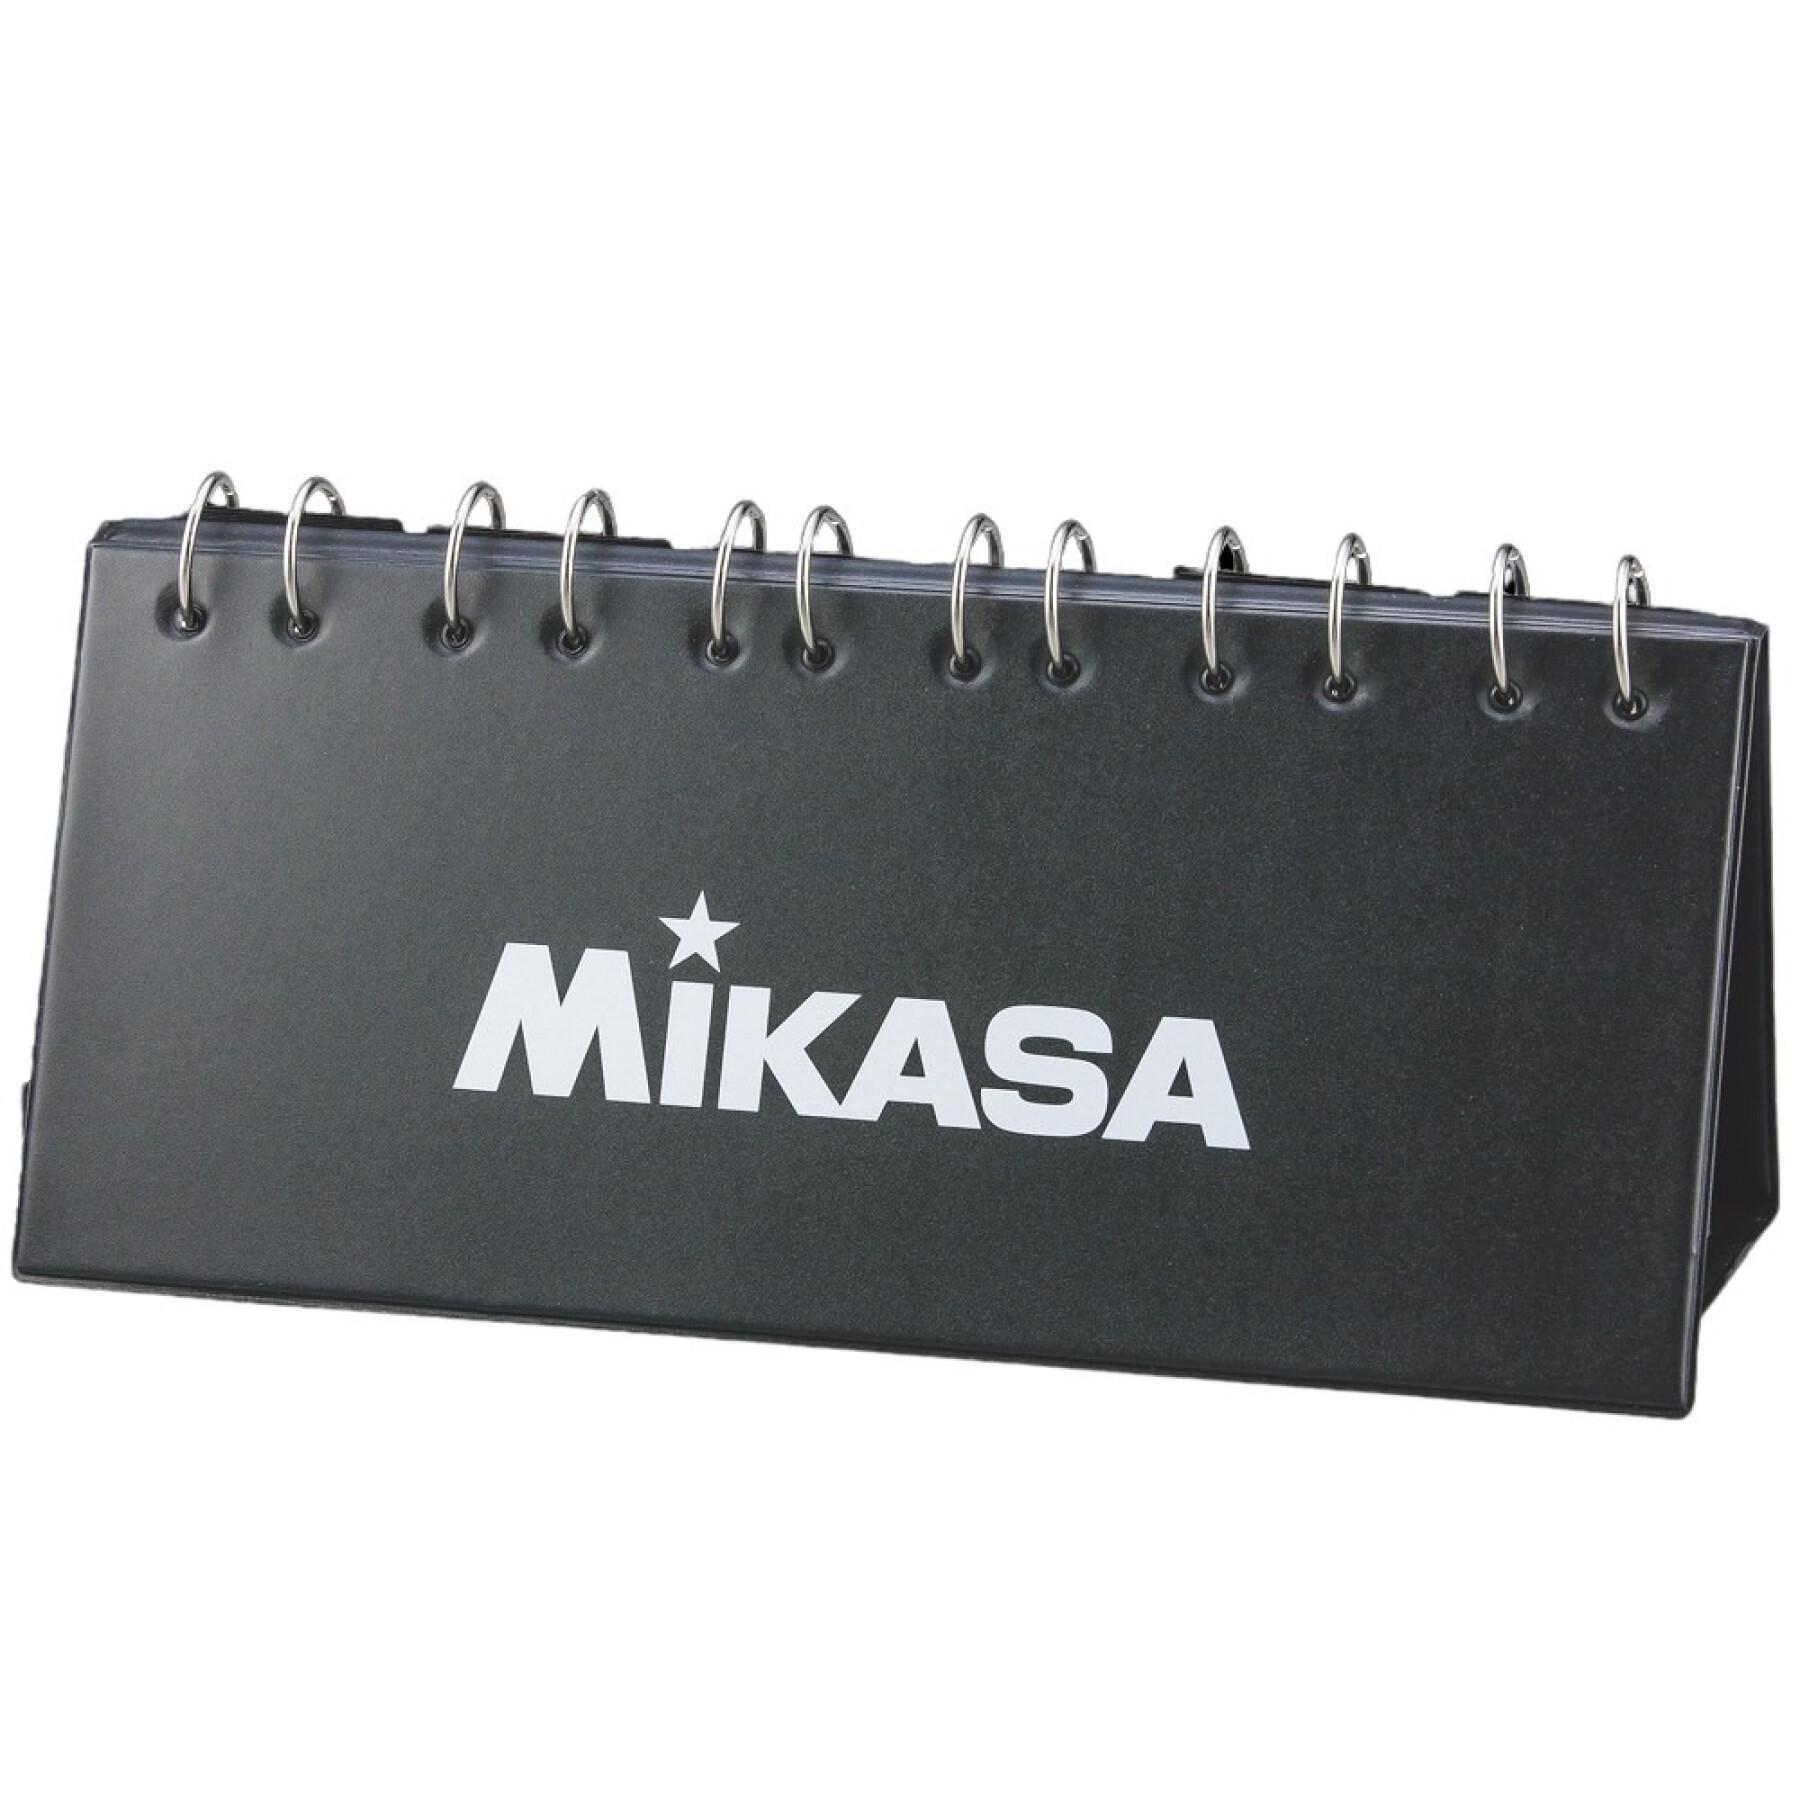 Tableau de score Mikasa (99 points)